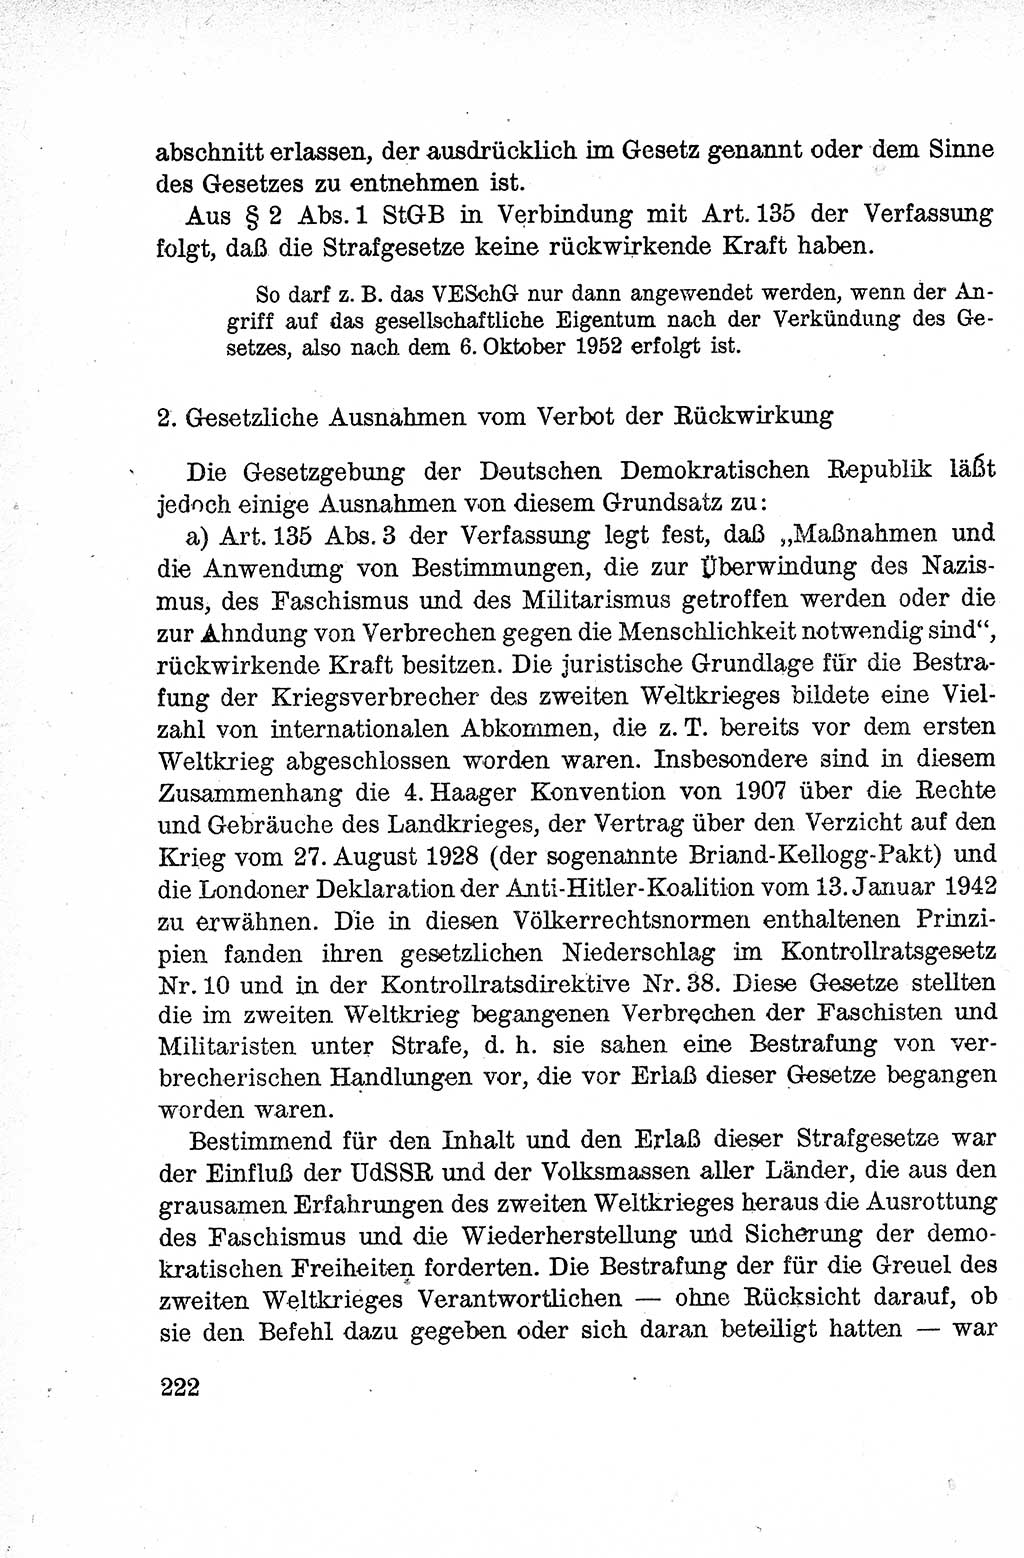 Lehrbuch des Strafrechts der Deutschen Demokratischen Republik (DDR), Allgemeiner Teil 1959, Seite 222 (Lb. Strafr. DDR AT 1959, S. 222)